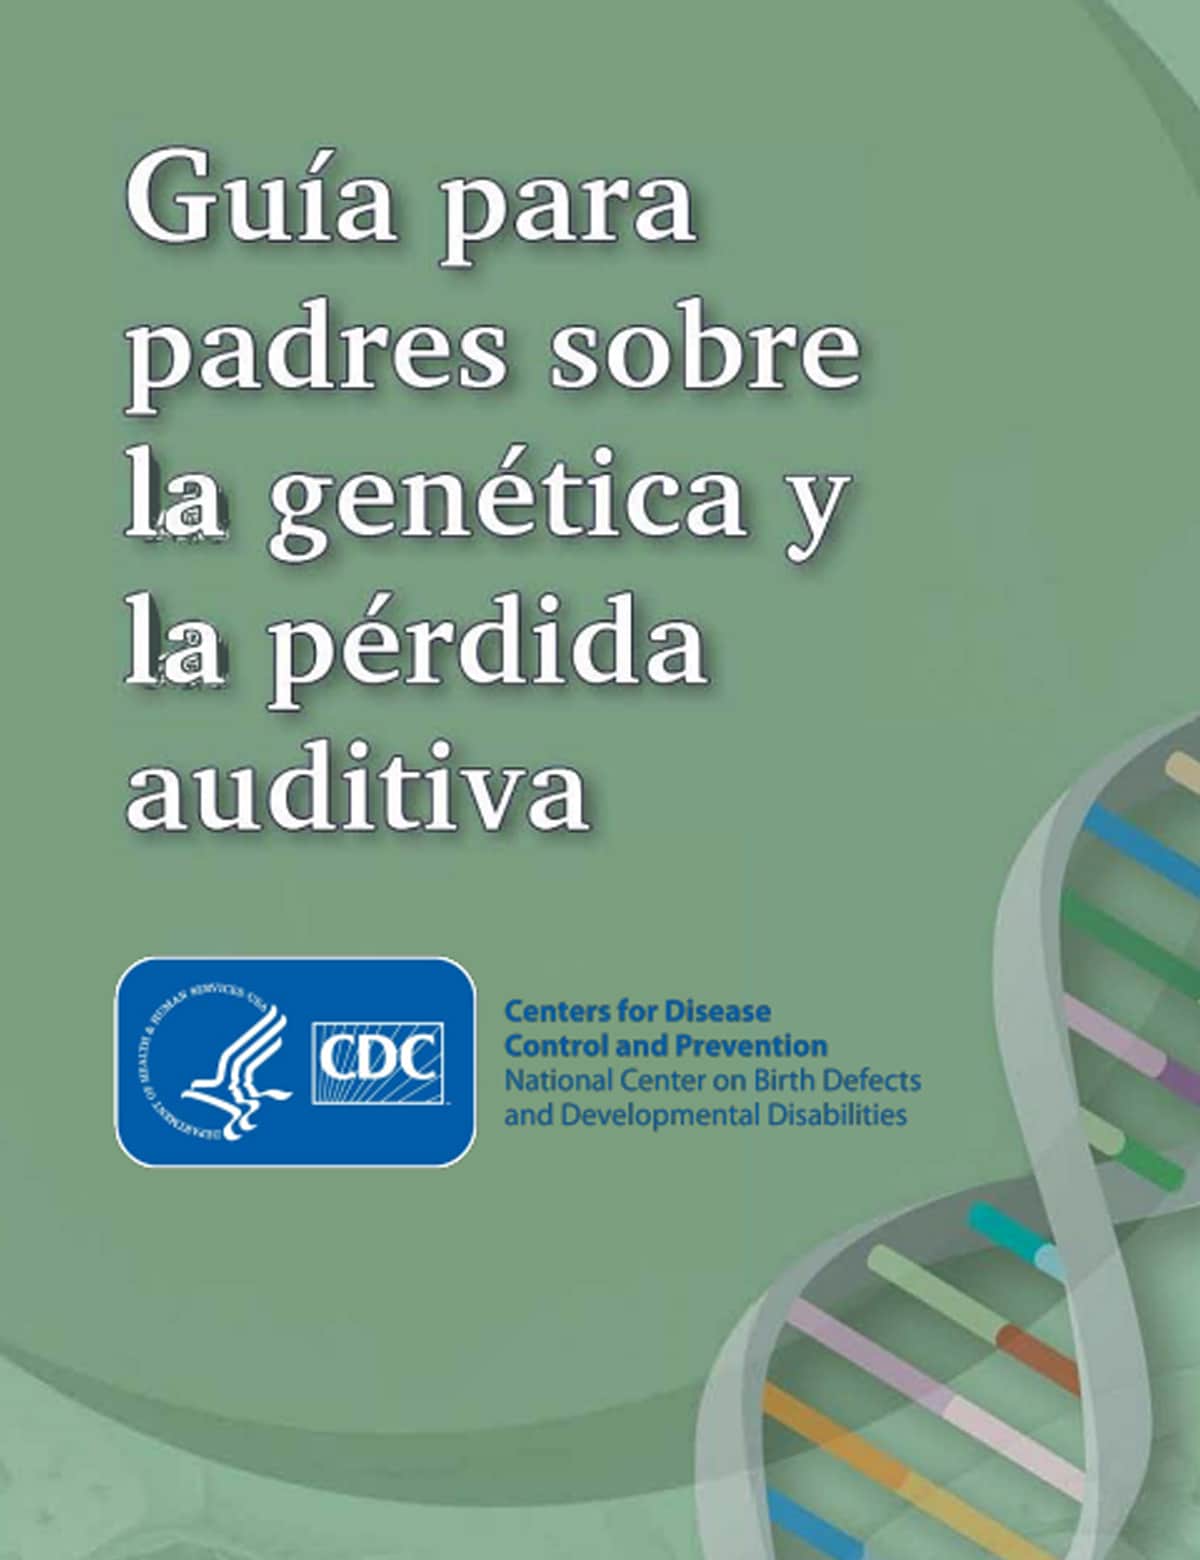 PDF preview - guia para padres sobre la genetica